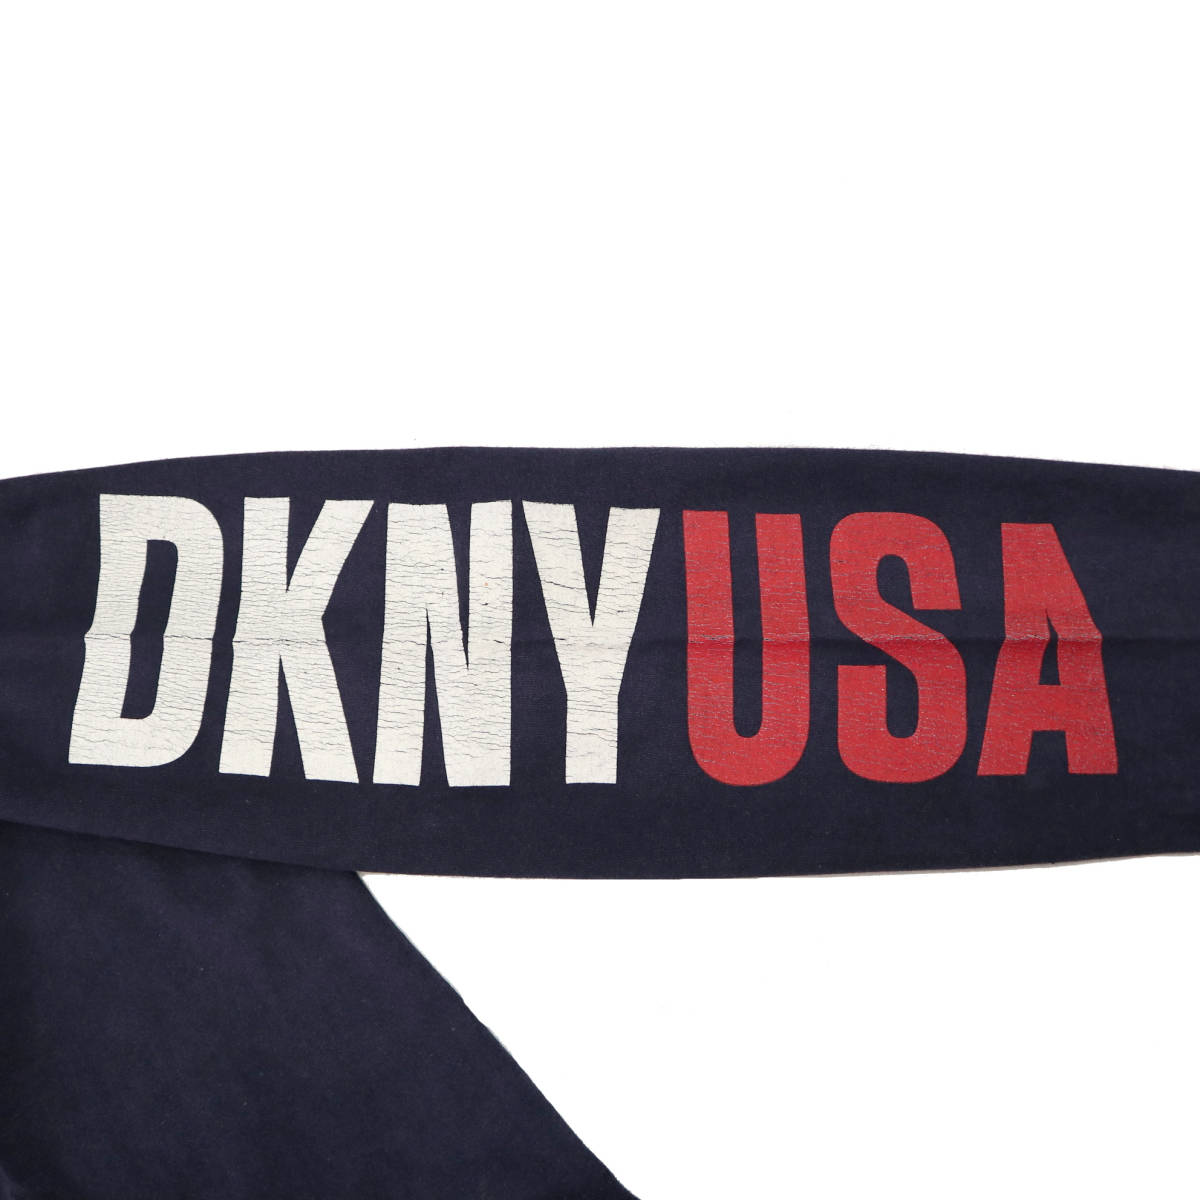  винтаж  90s～ dkny jeans  рукав   принт   макет  гриф  t рубашка   USA пр-во    длинный рукав   ...T ...  Америка  navy  синий   спорт  ...